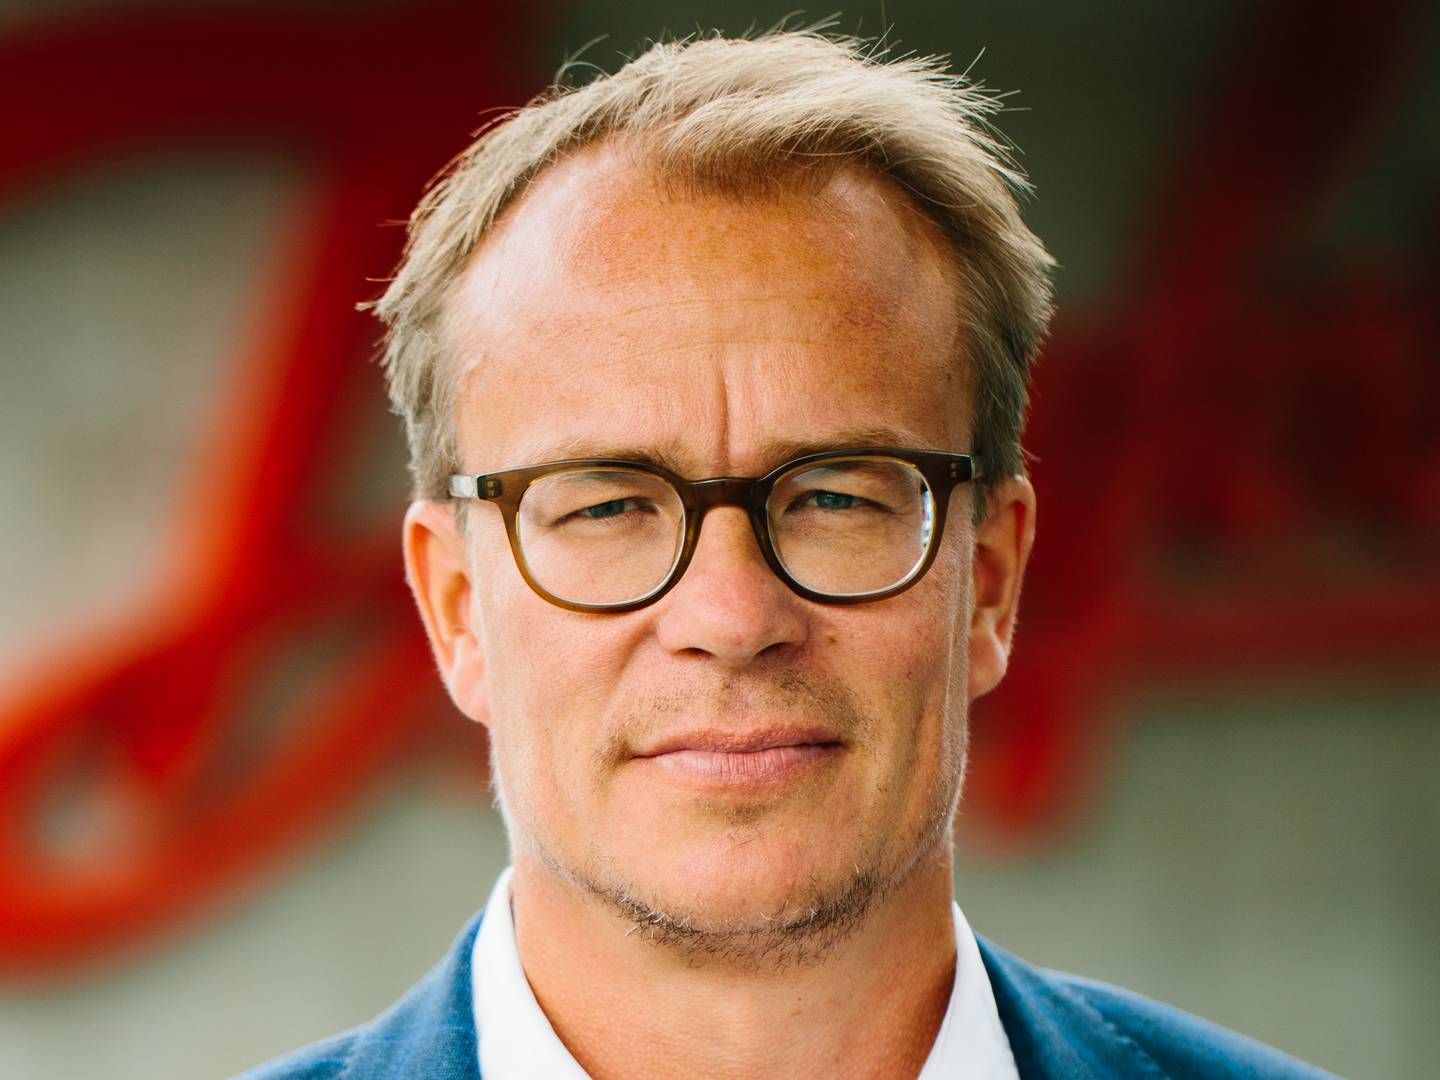 Martin Rossen, global direktør for bæredygtighed og kommunikation hos Danfoss. | Foto: Danfoss/PR